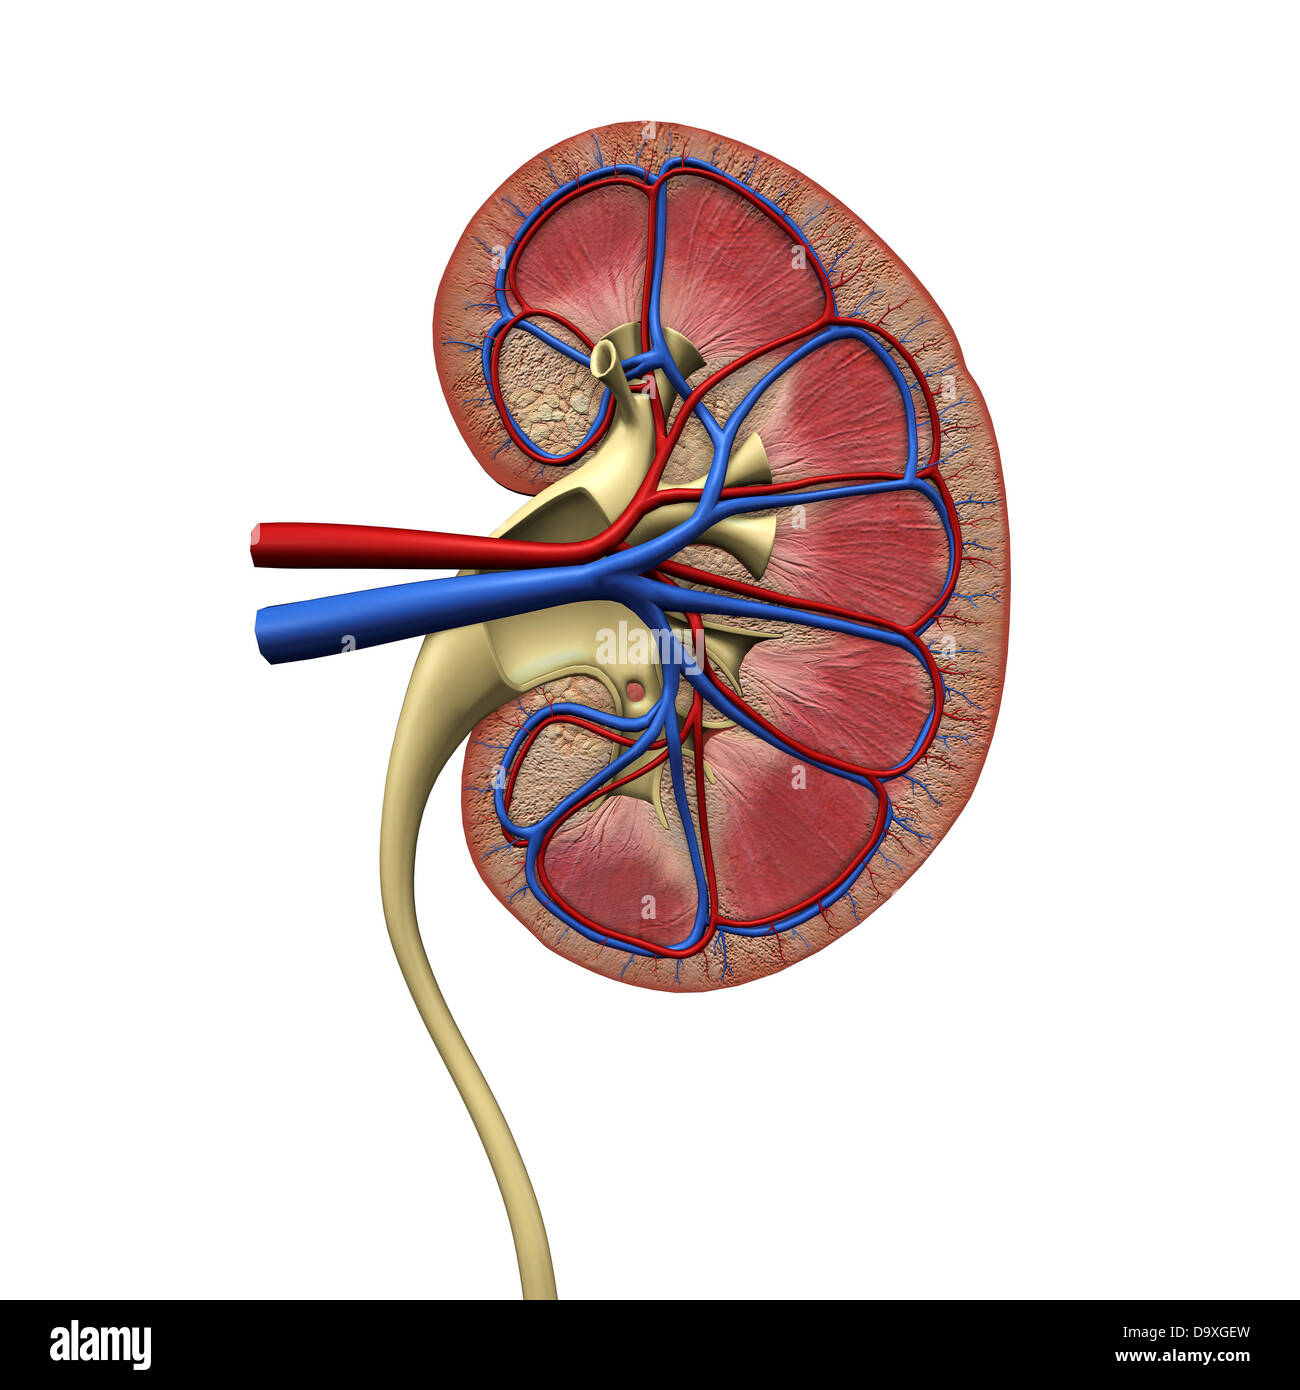 Querschnitt Der Menschlichen Niere Harnleiter Arterien Venen Stockfotografie Alamy